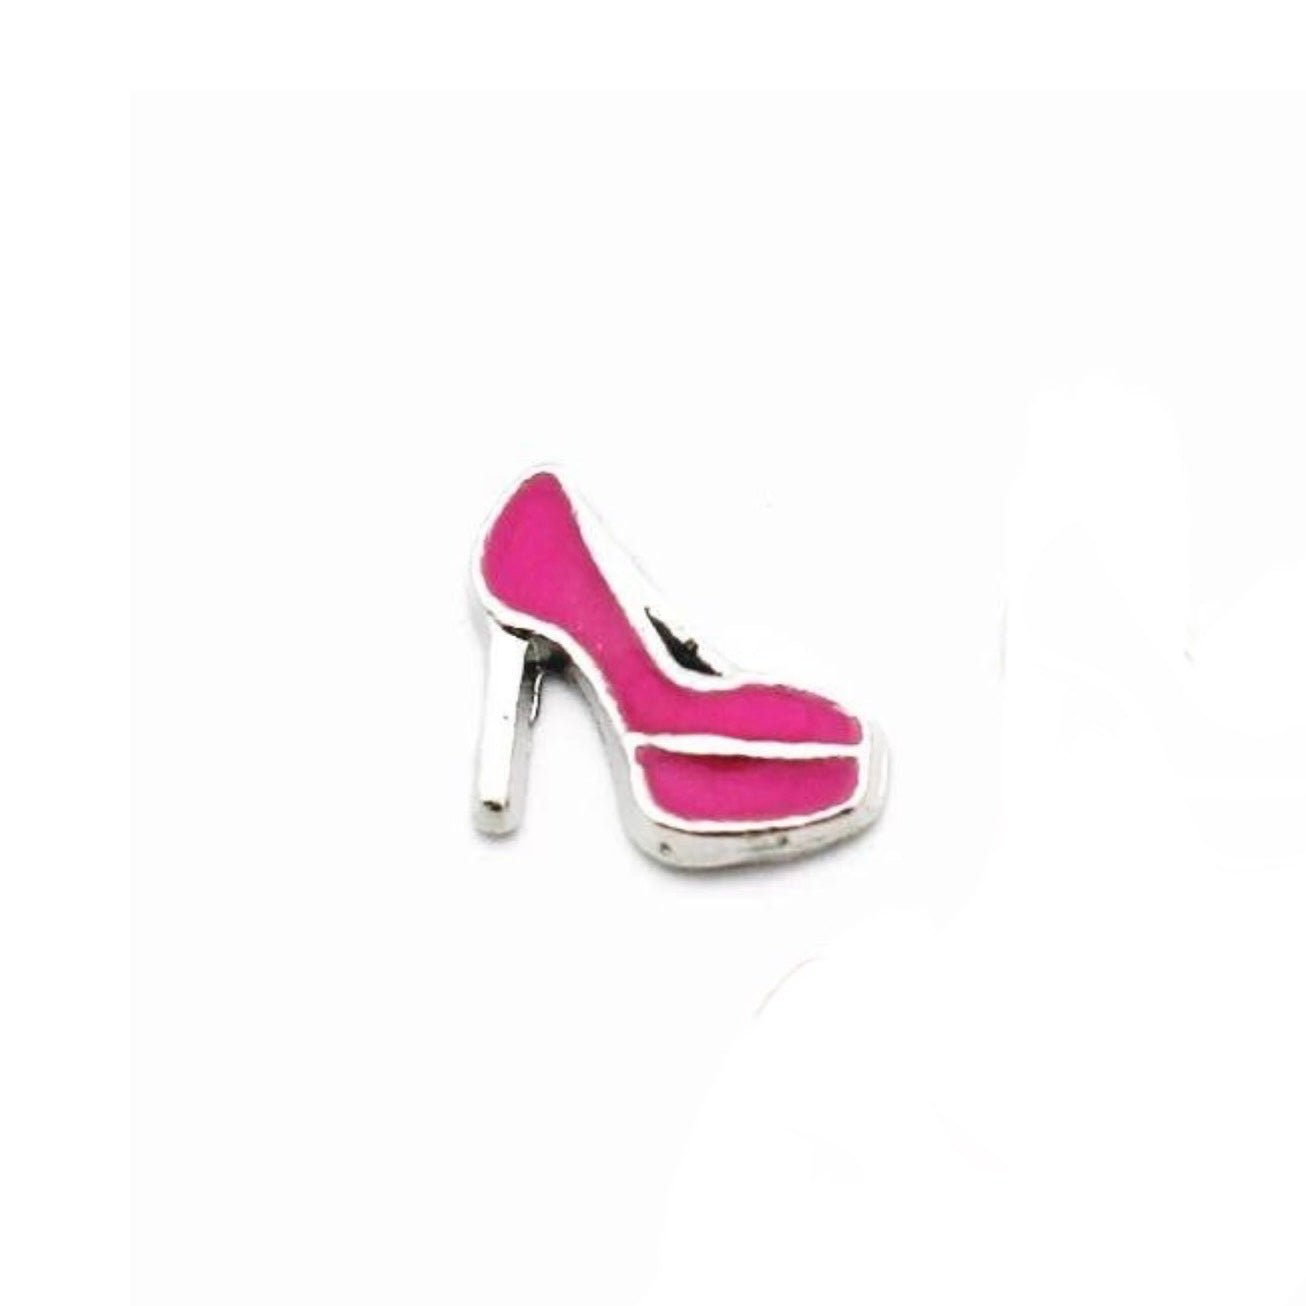 Memory Locket Charm - Pink Shoe